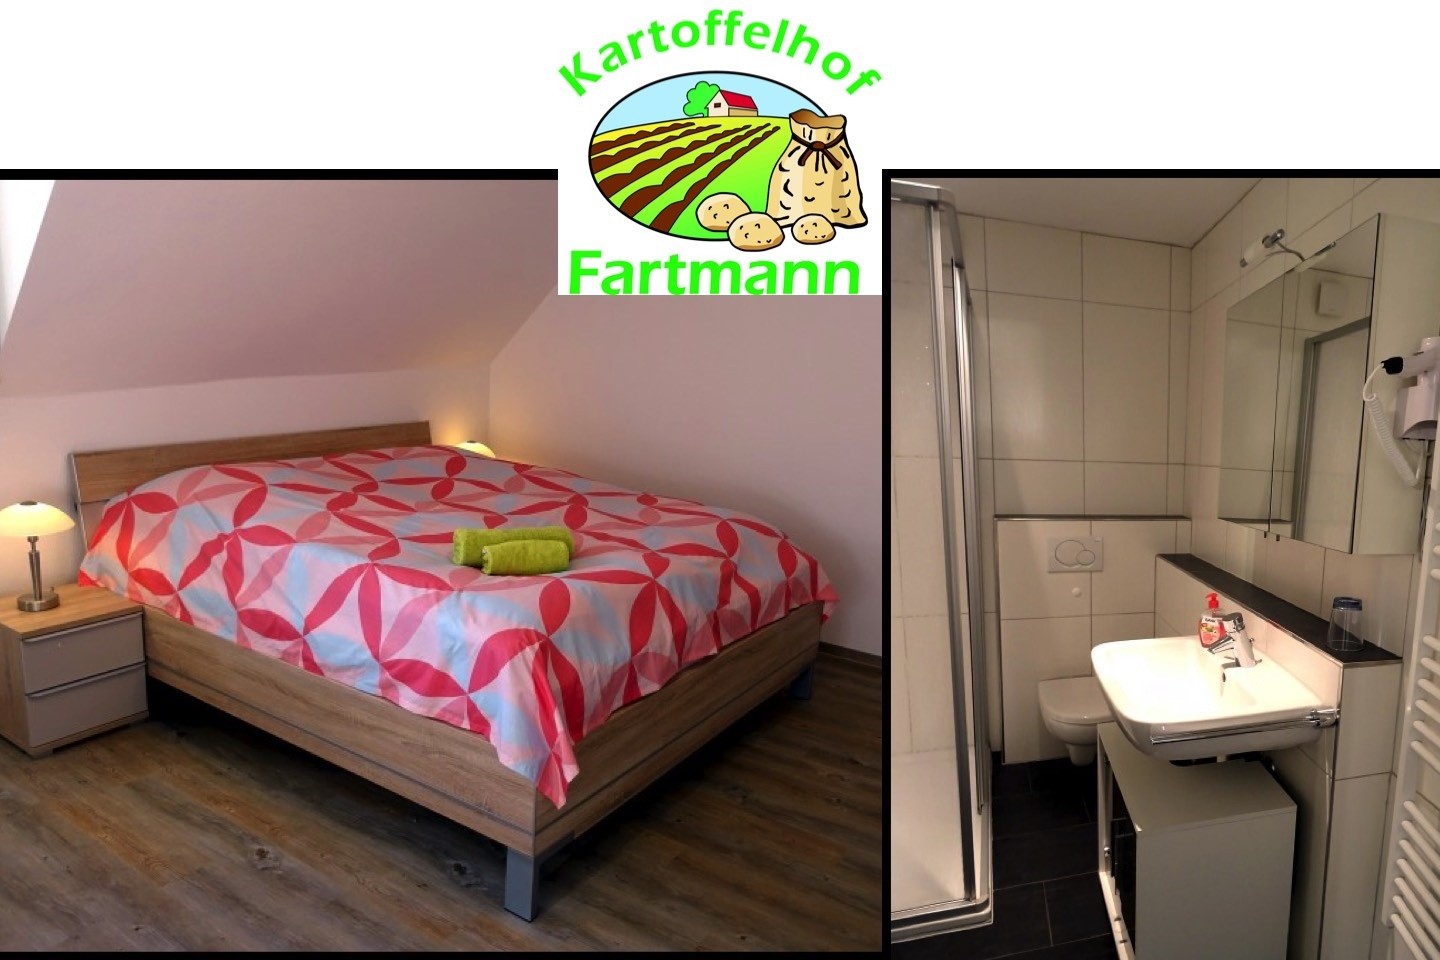 Kartoffelhof Fartmann,Kartoffelhof,Fartmann,Vohren,Warendorf,Ferienwohnung,Reibeplätzchen,Hofladen